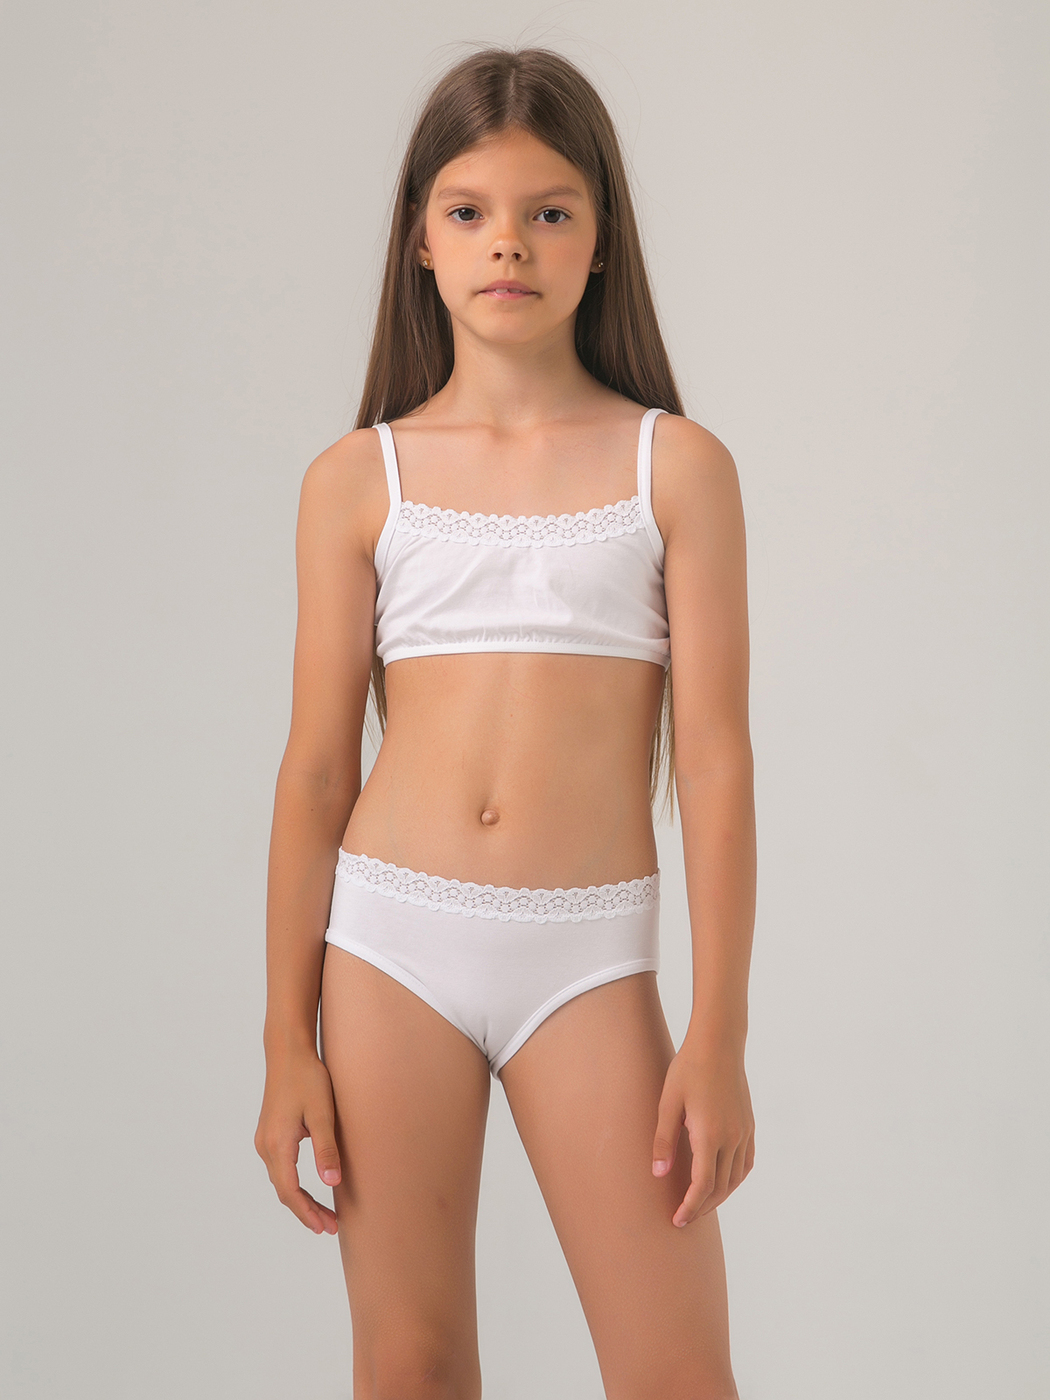 girl in tight white underwear 1050x1400